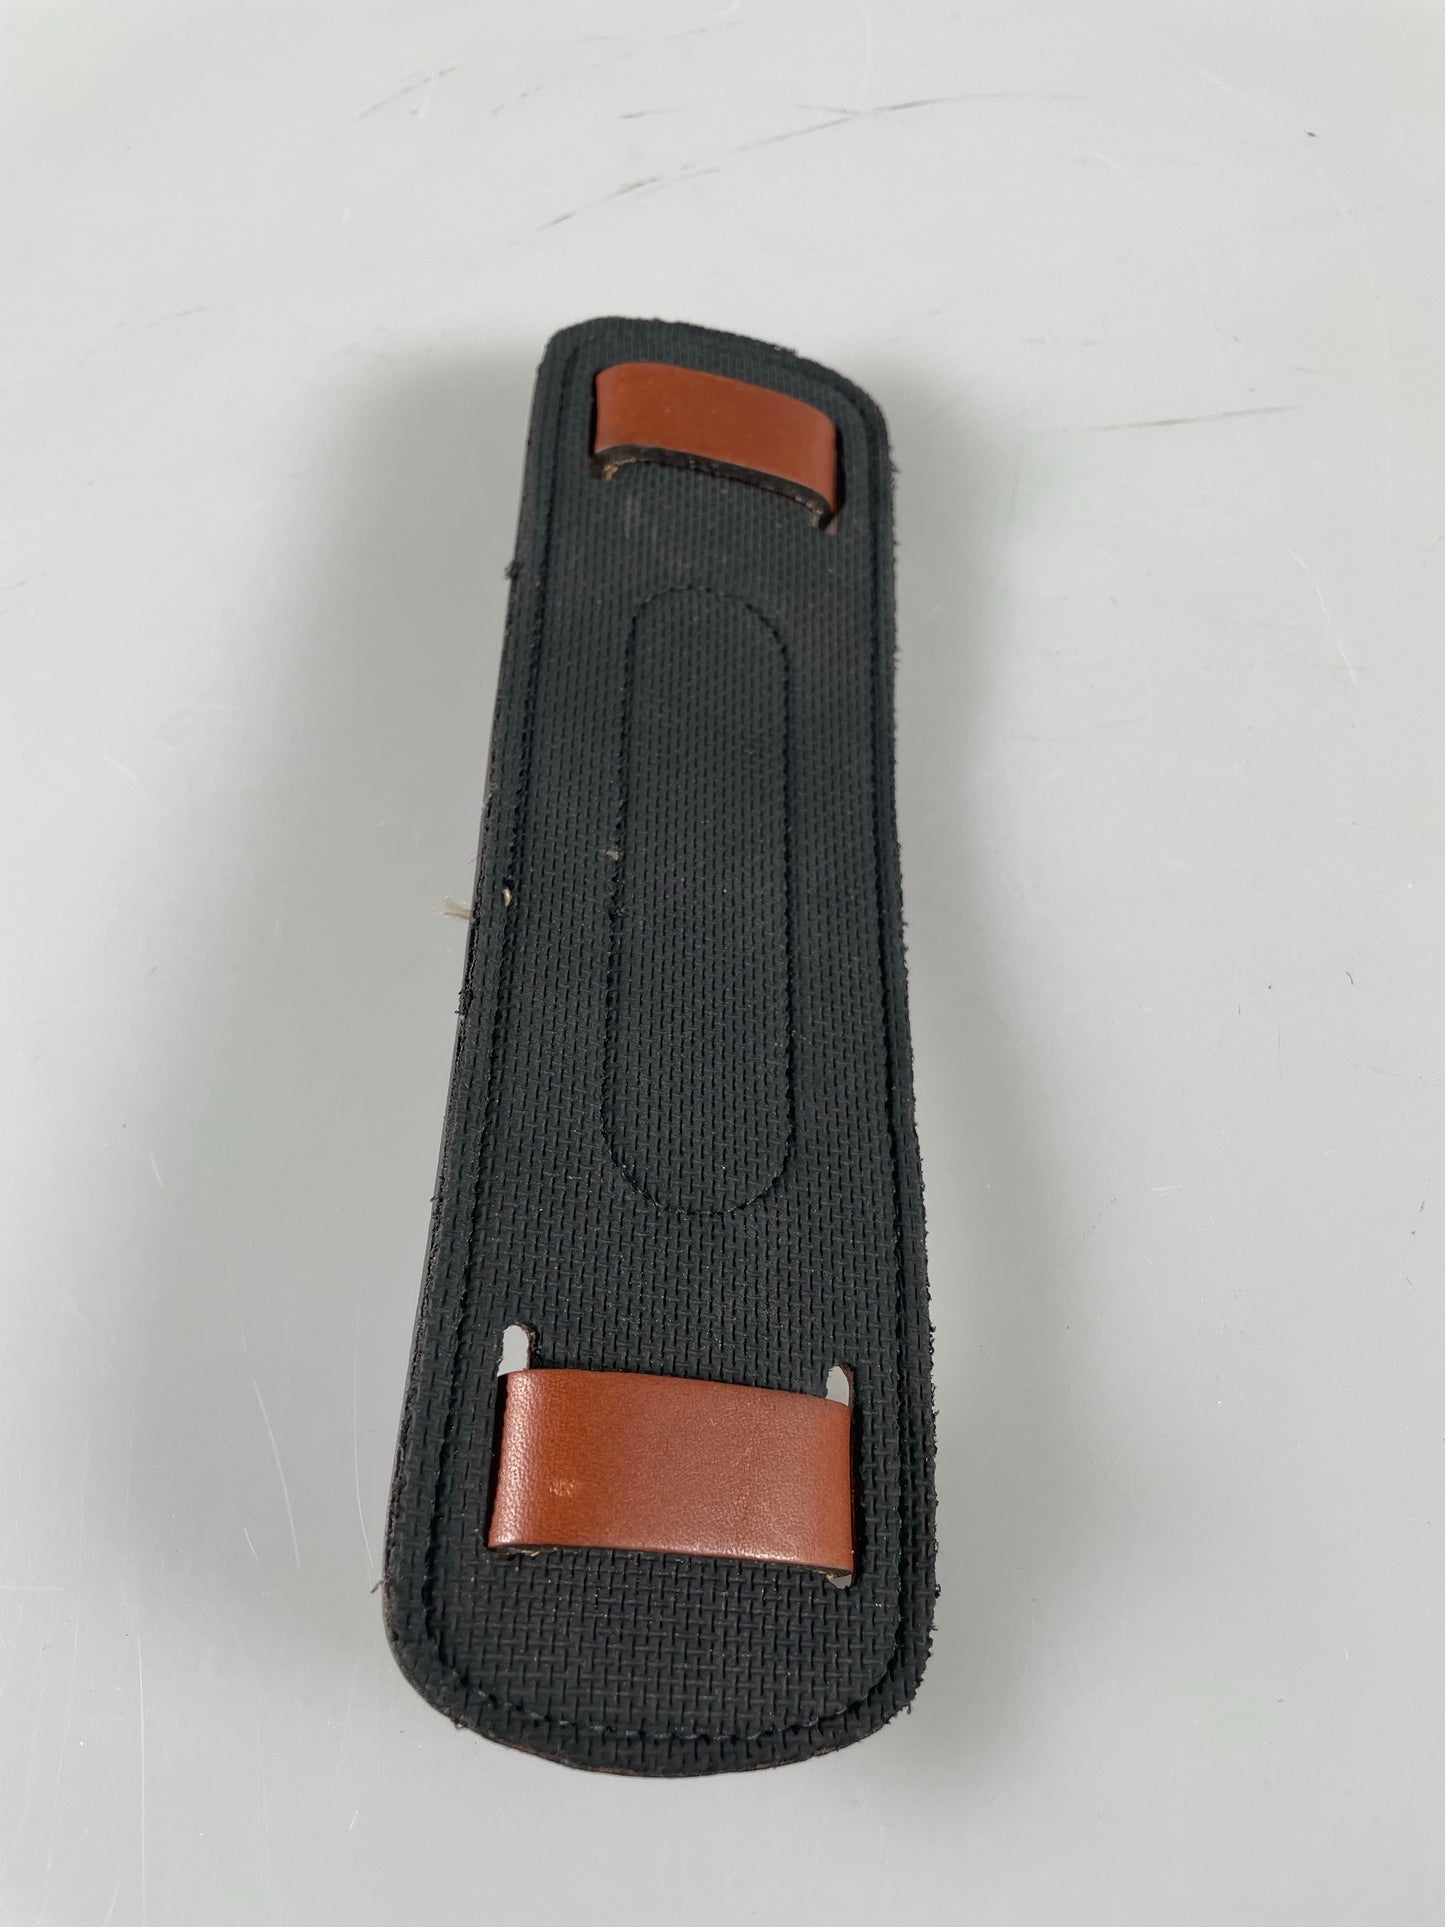 Billingham SP20 Shoulder Pad Tan/Brown Leather